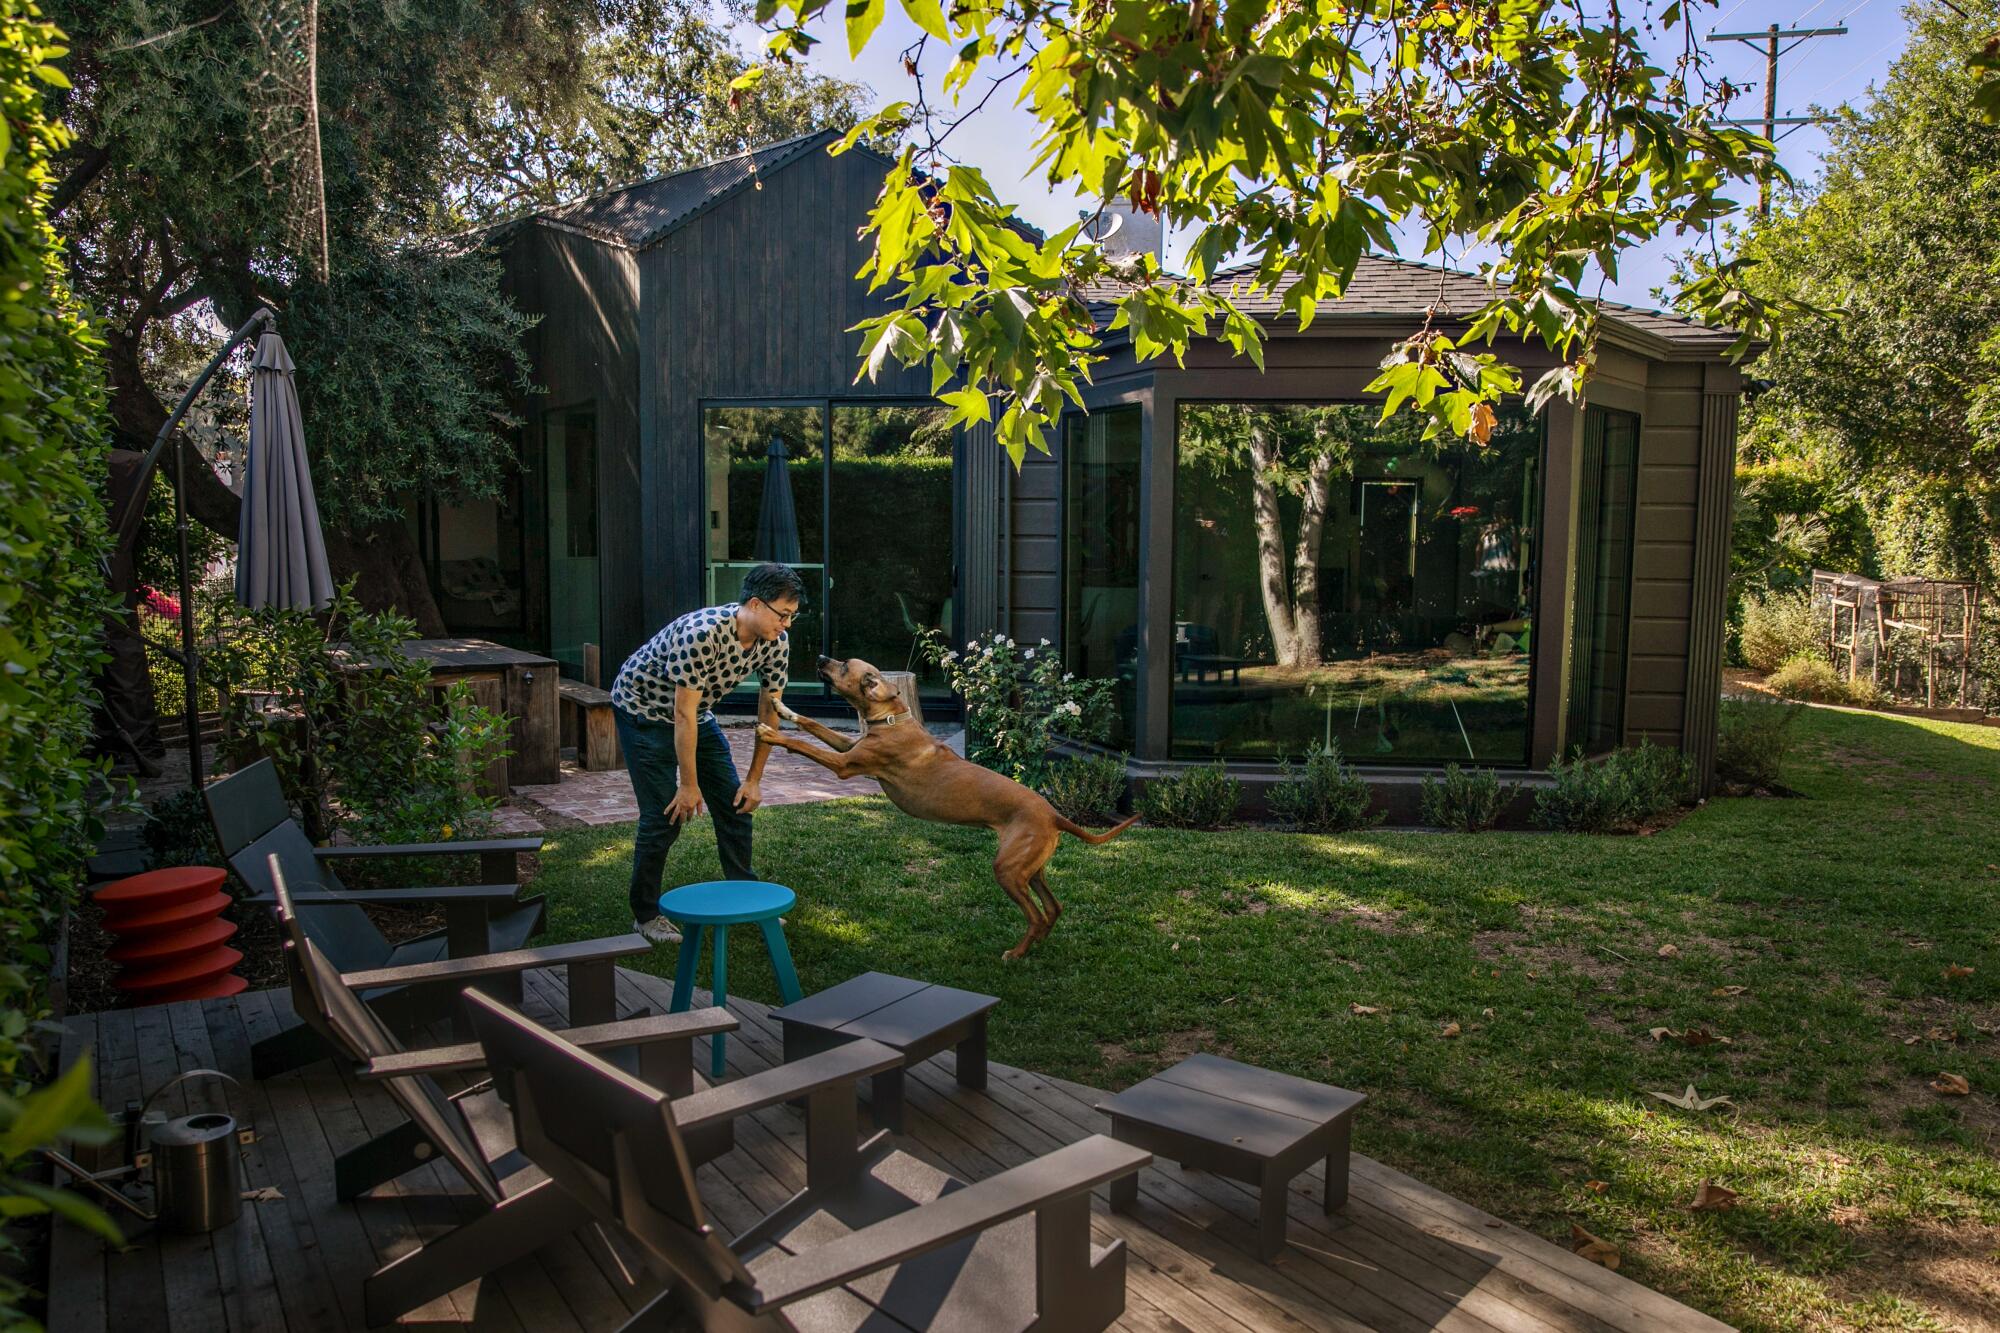 Een man speelt met een hond in een achtertuin.